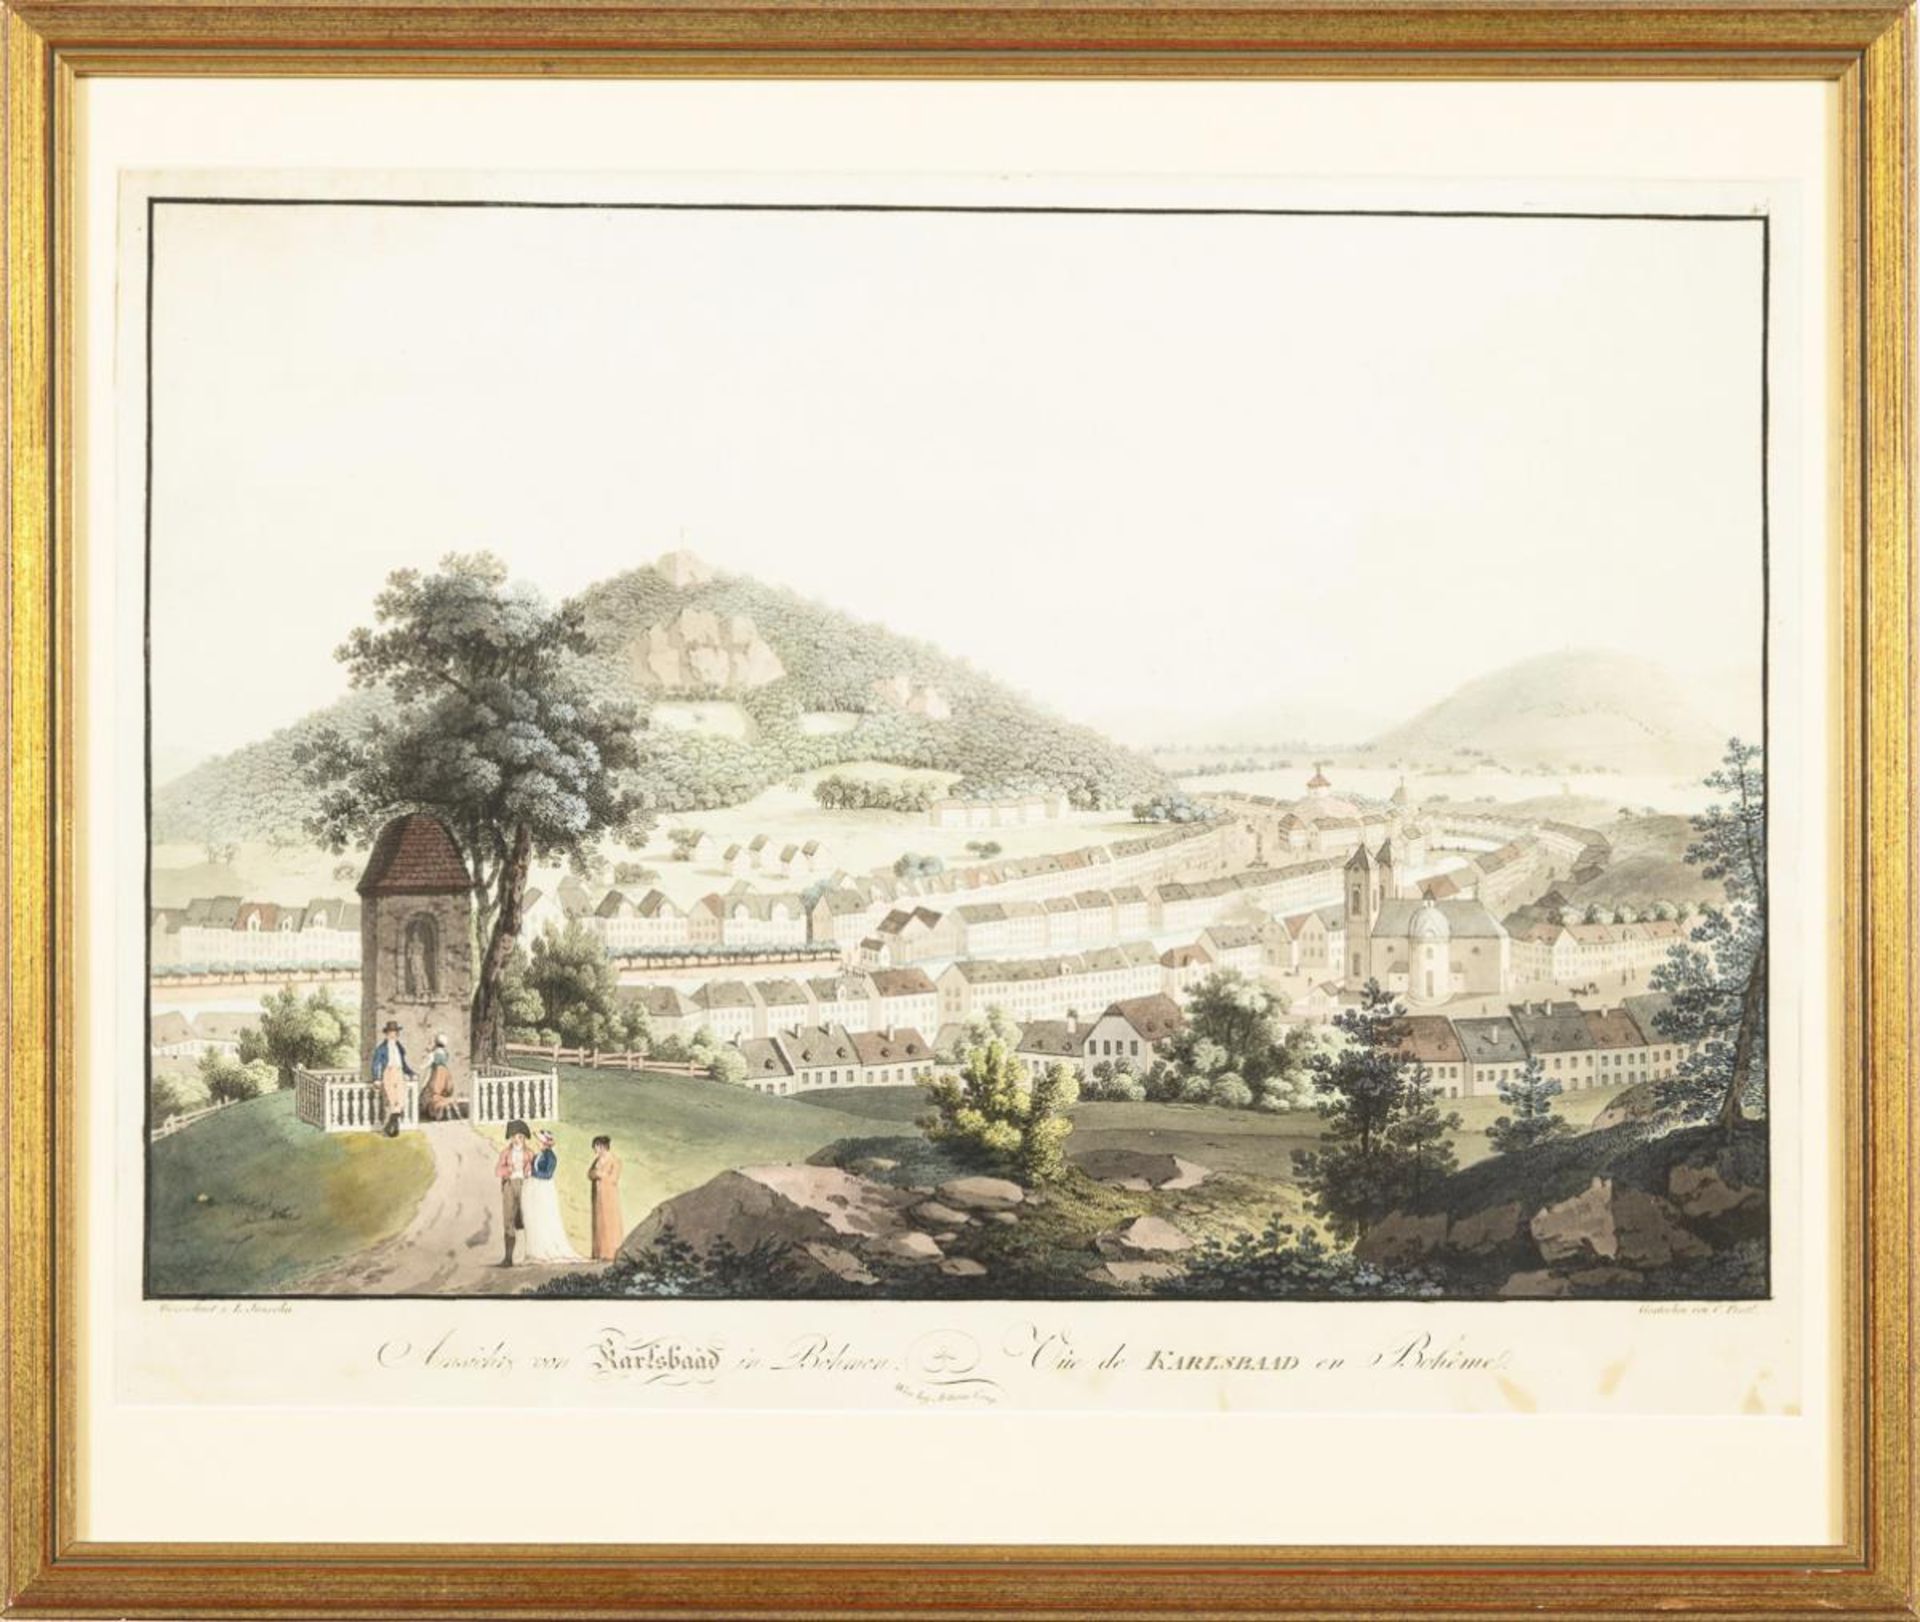 POSTL, Carel (1769 Bechin (wohl) - 1818 Prag). "Ansicht von Karlsbad". - Image 2 of 2